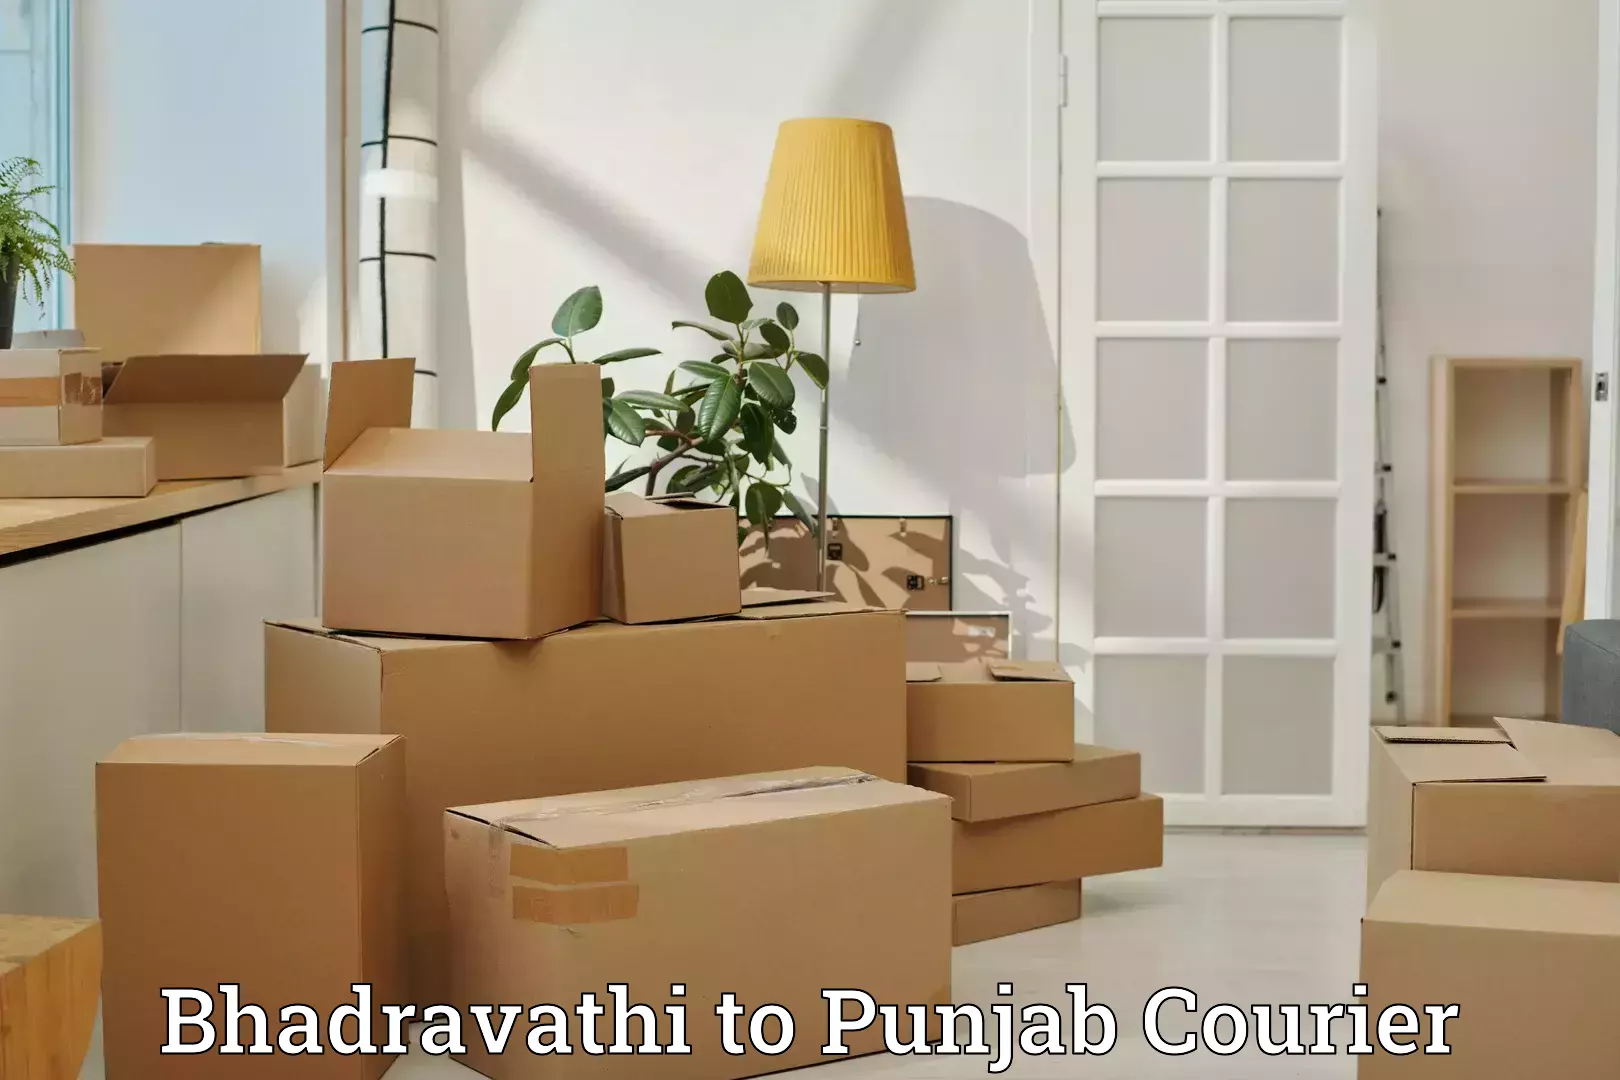 Luggage shipment tracking in Bhadravathi to Punjab